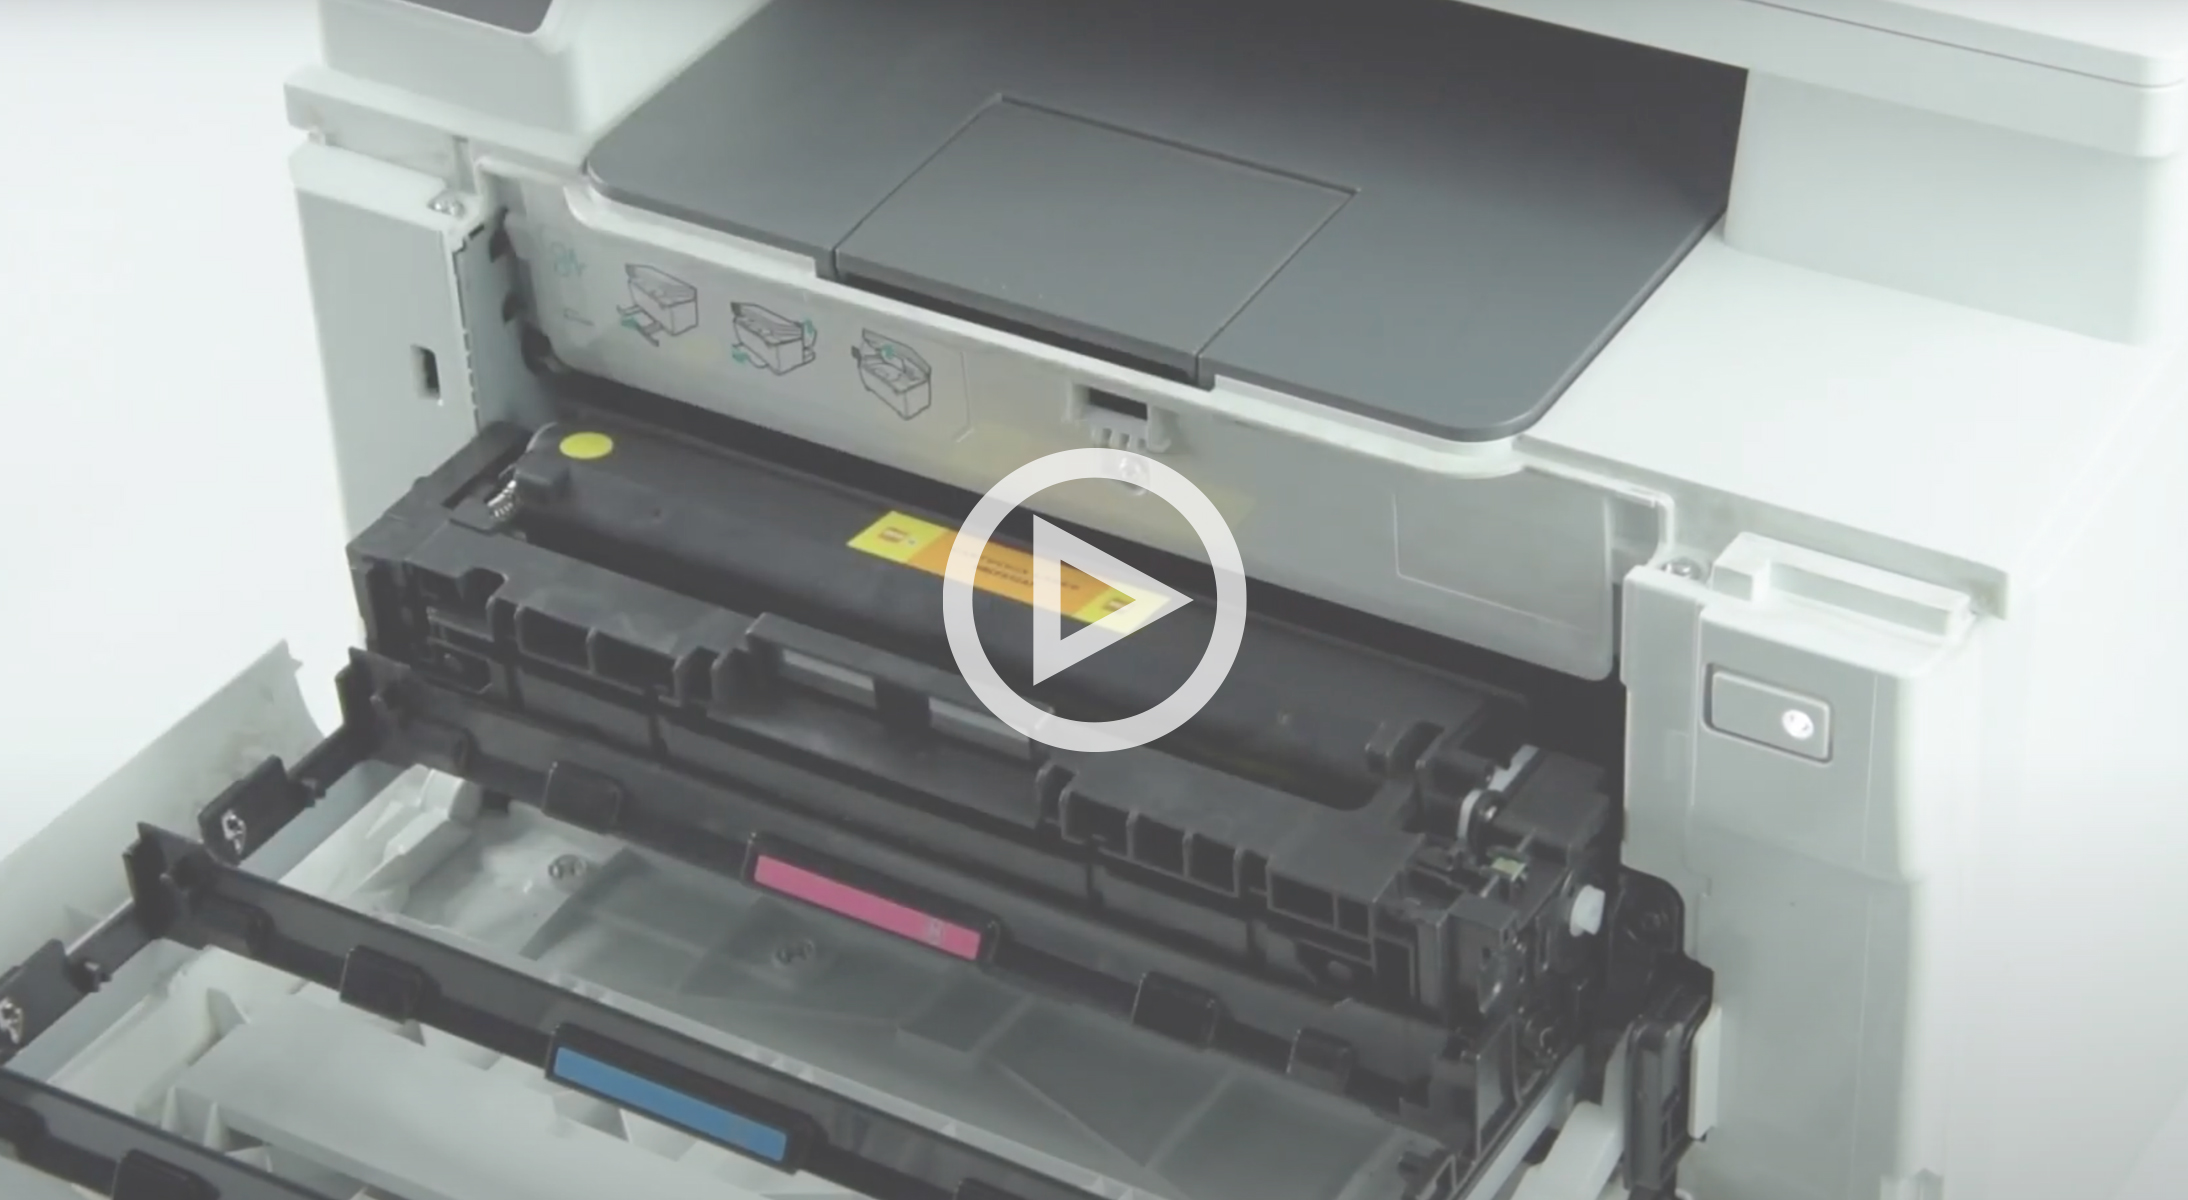 Come sostituisco i toner sulle stampanti a colori HP? - Eco Store